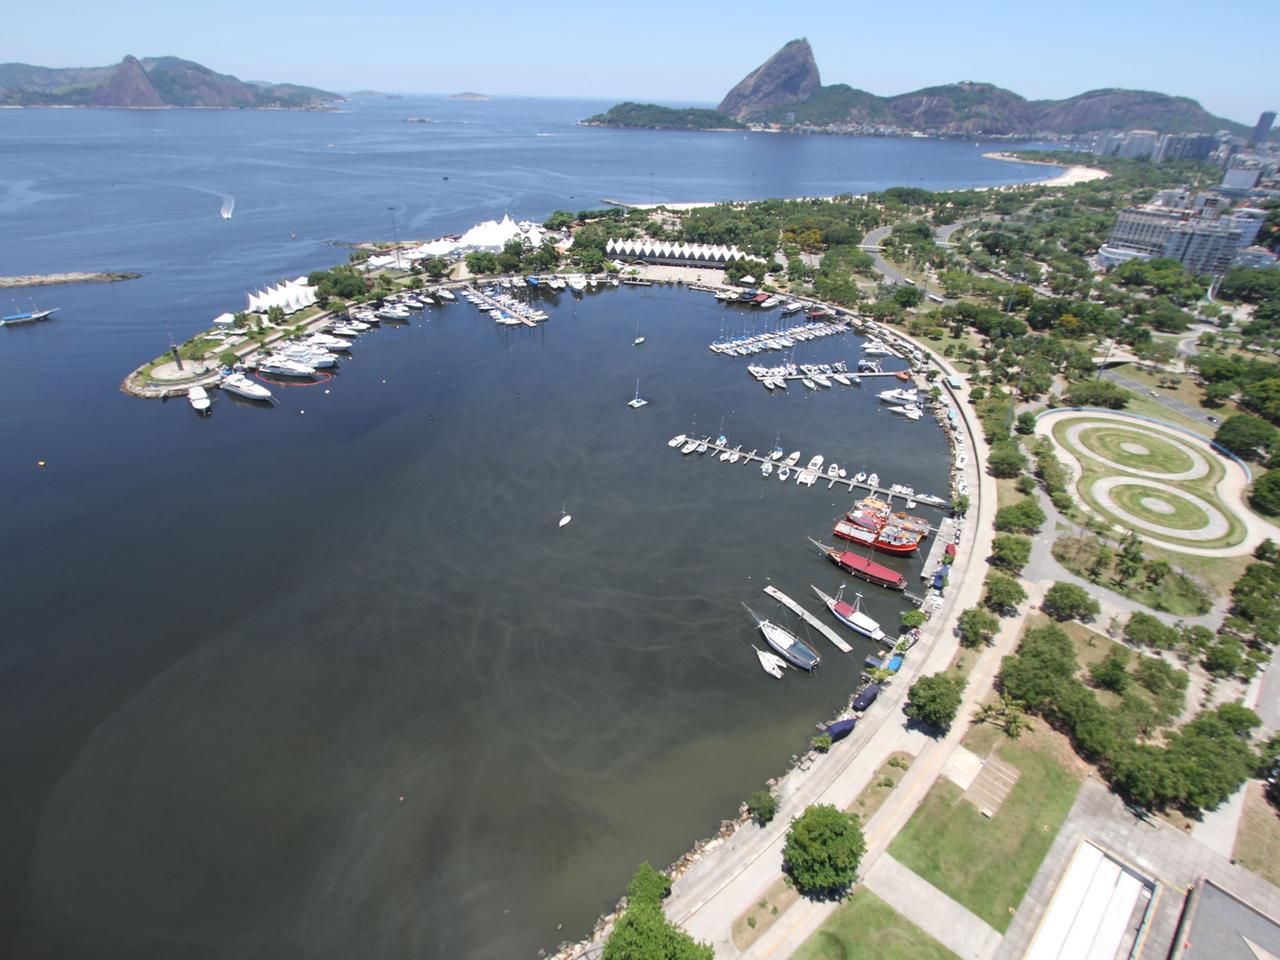 Marina da Glória, Hauptquartier der Segel-Wettkämpfe der Olympischen Spiele 2016